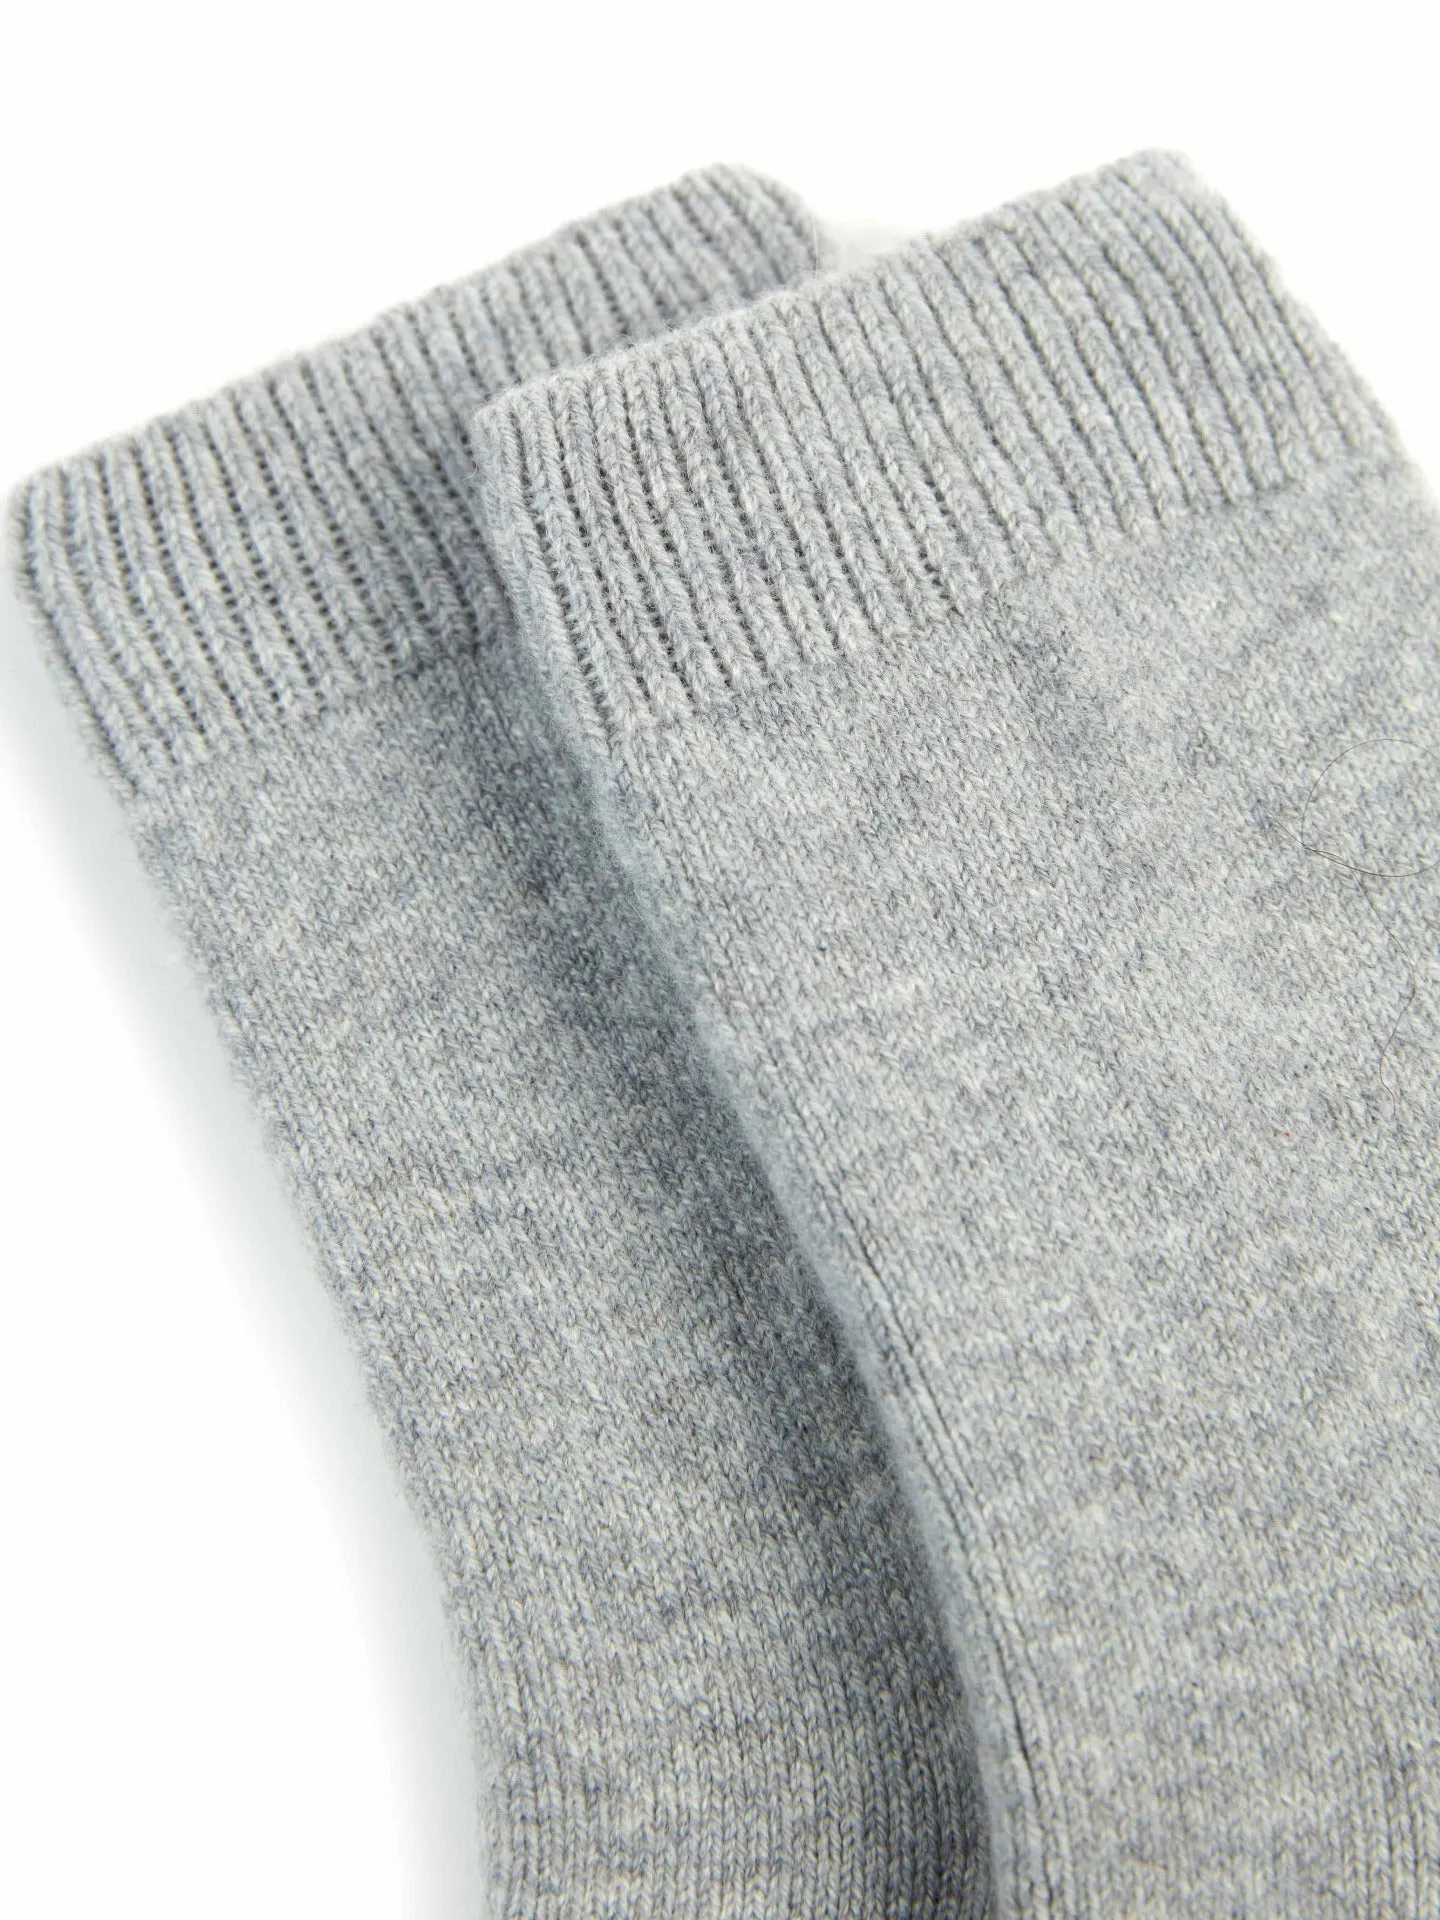 Women's Trim Knit Socks Gray - Gobi Cashmere